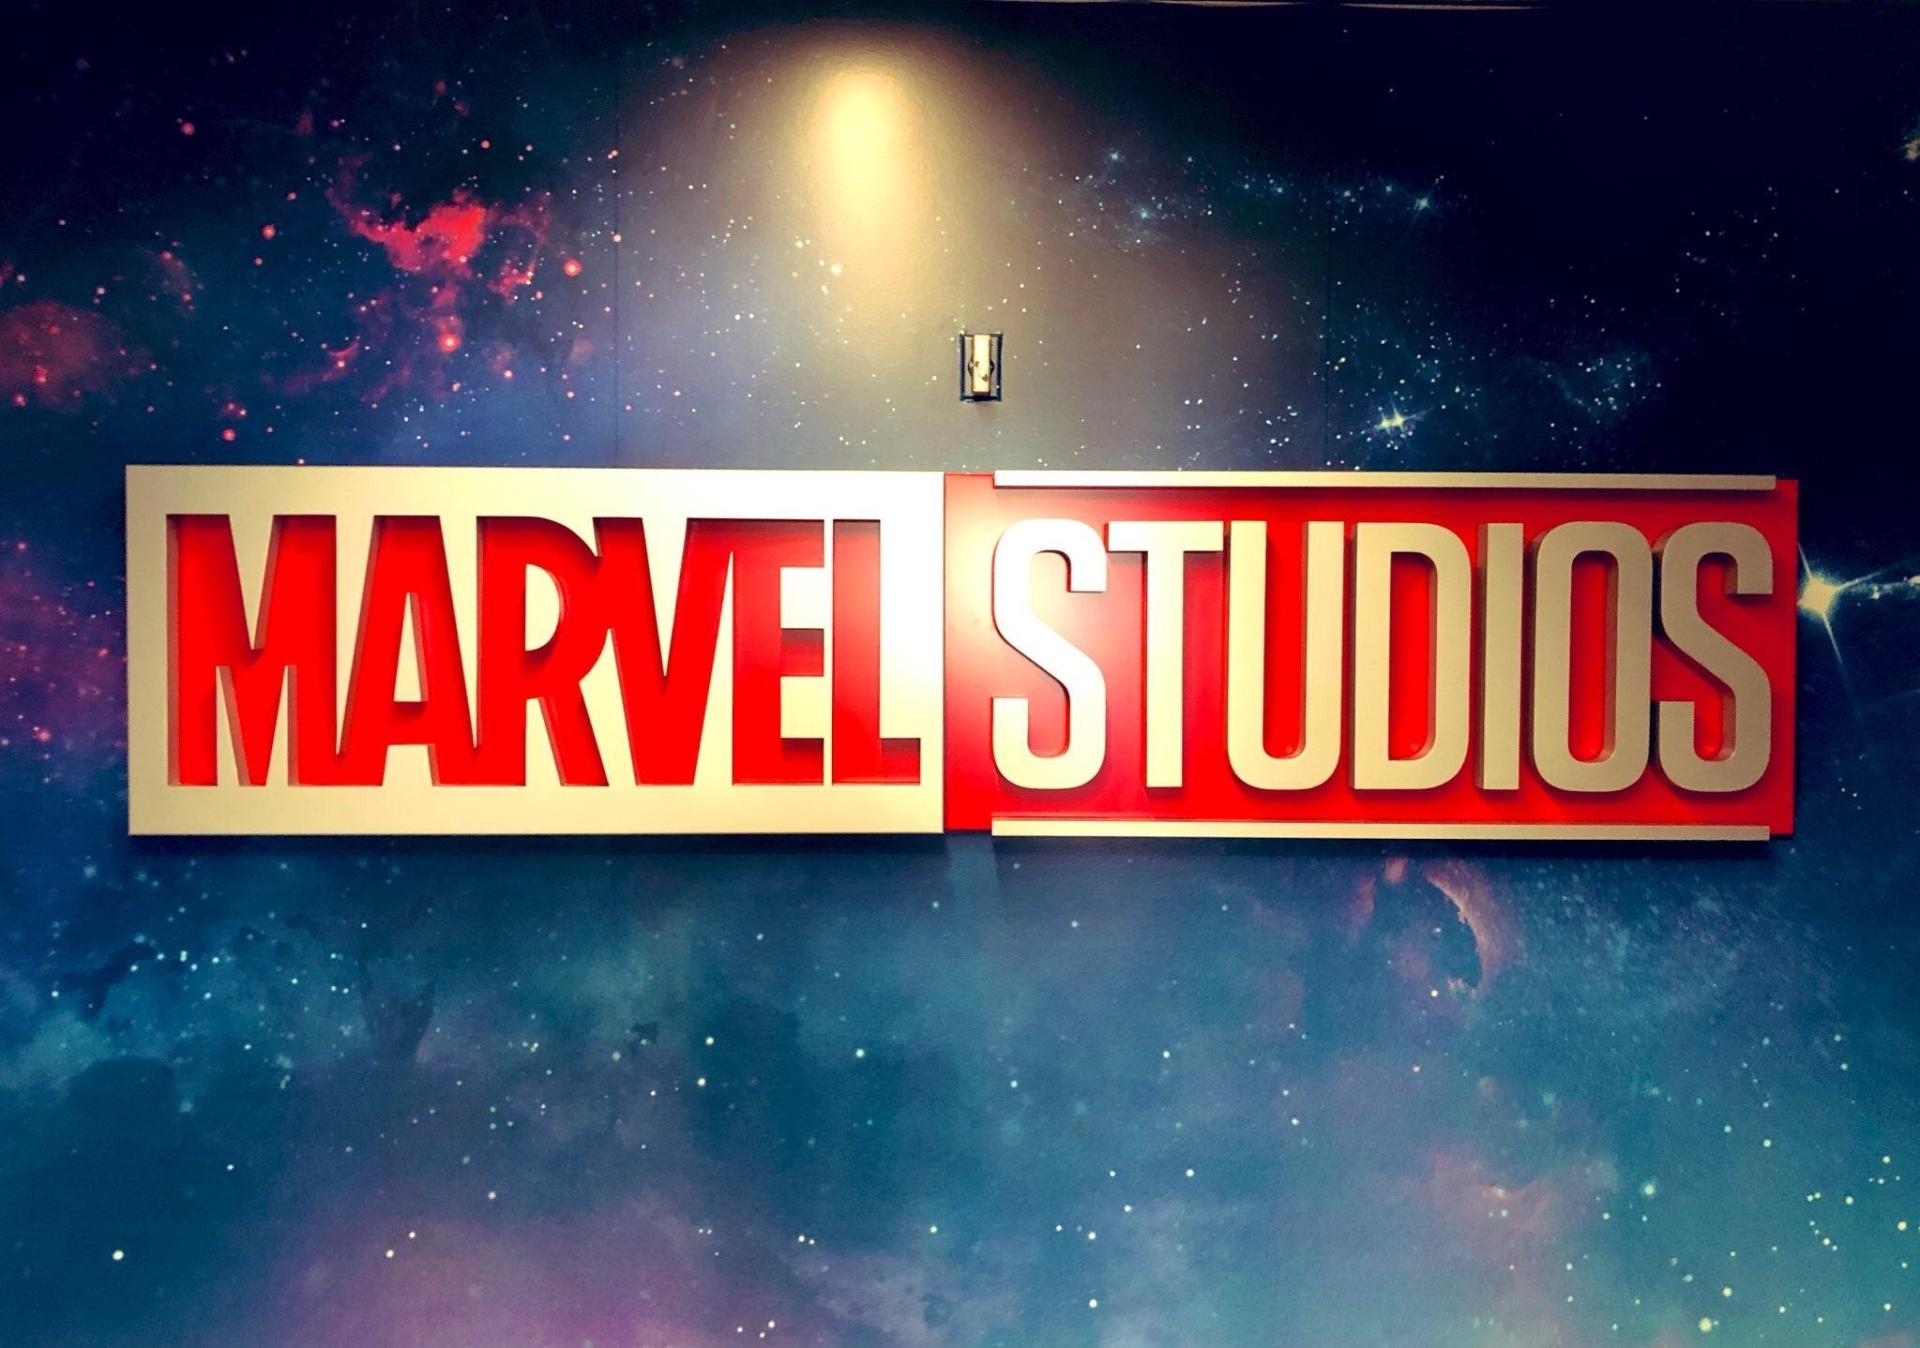 Marvel studios plans remuneratio